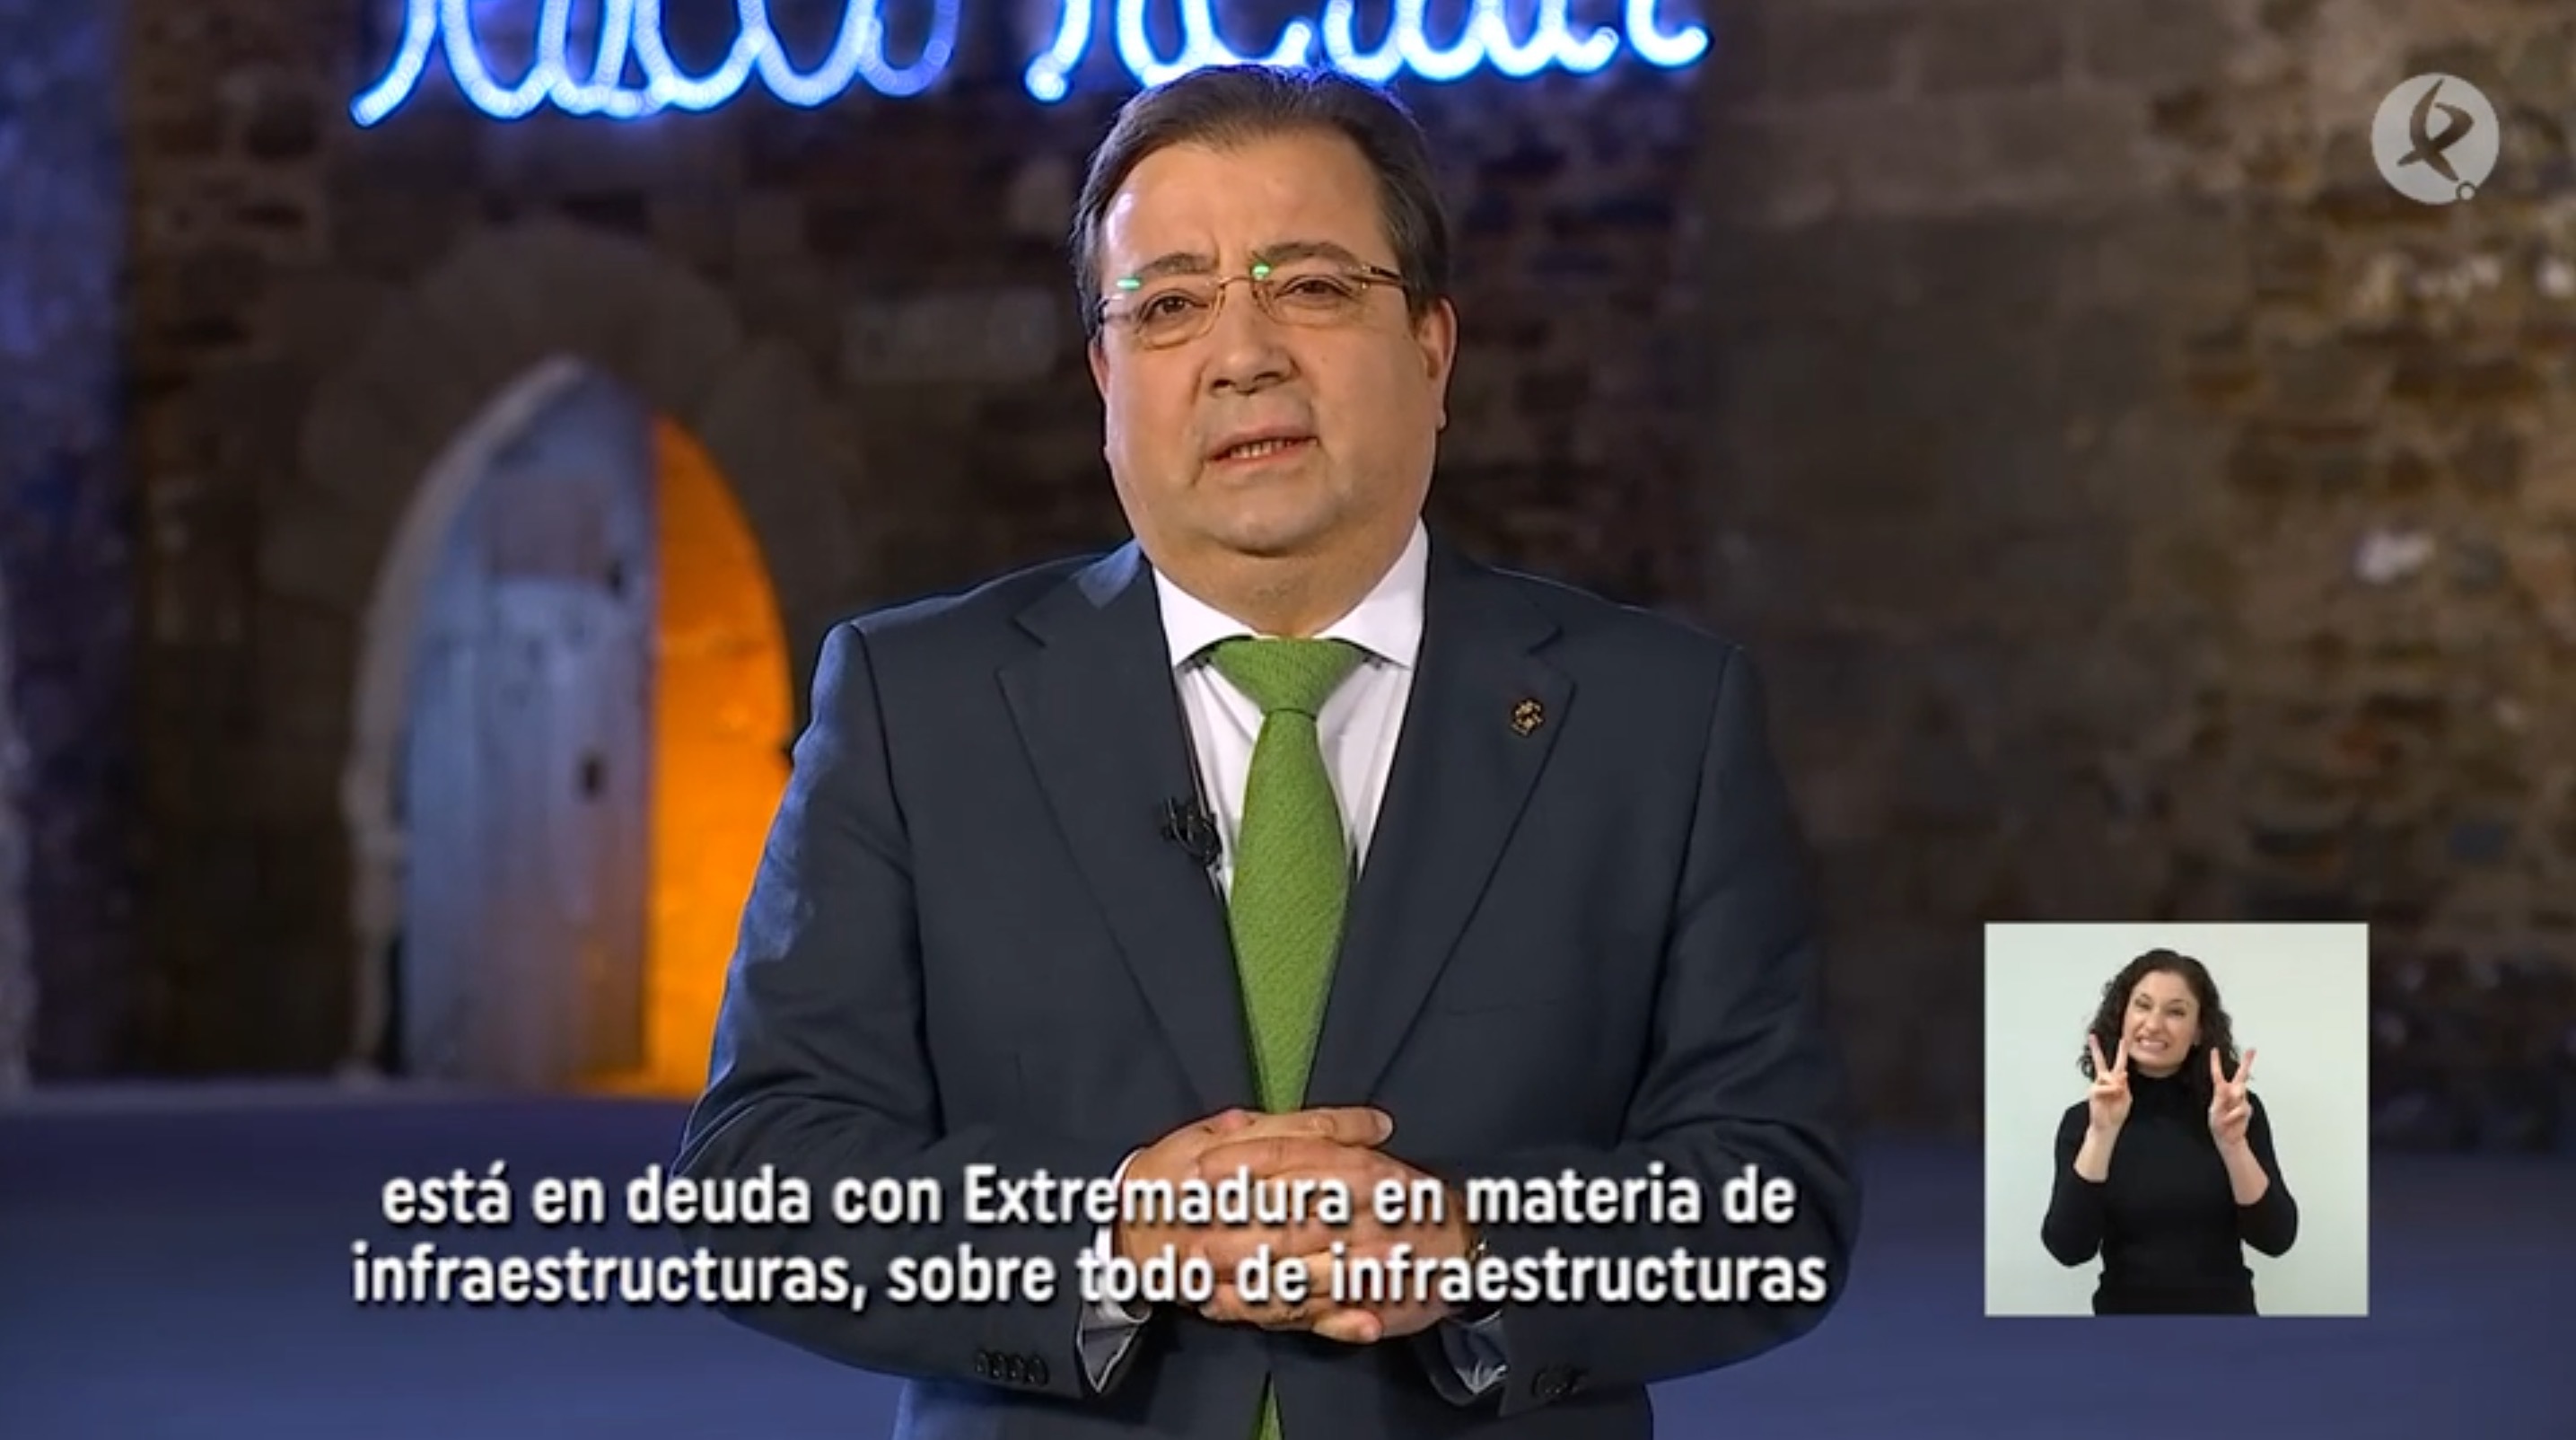 de Extremadura (2020)